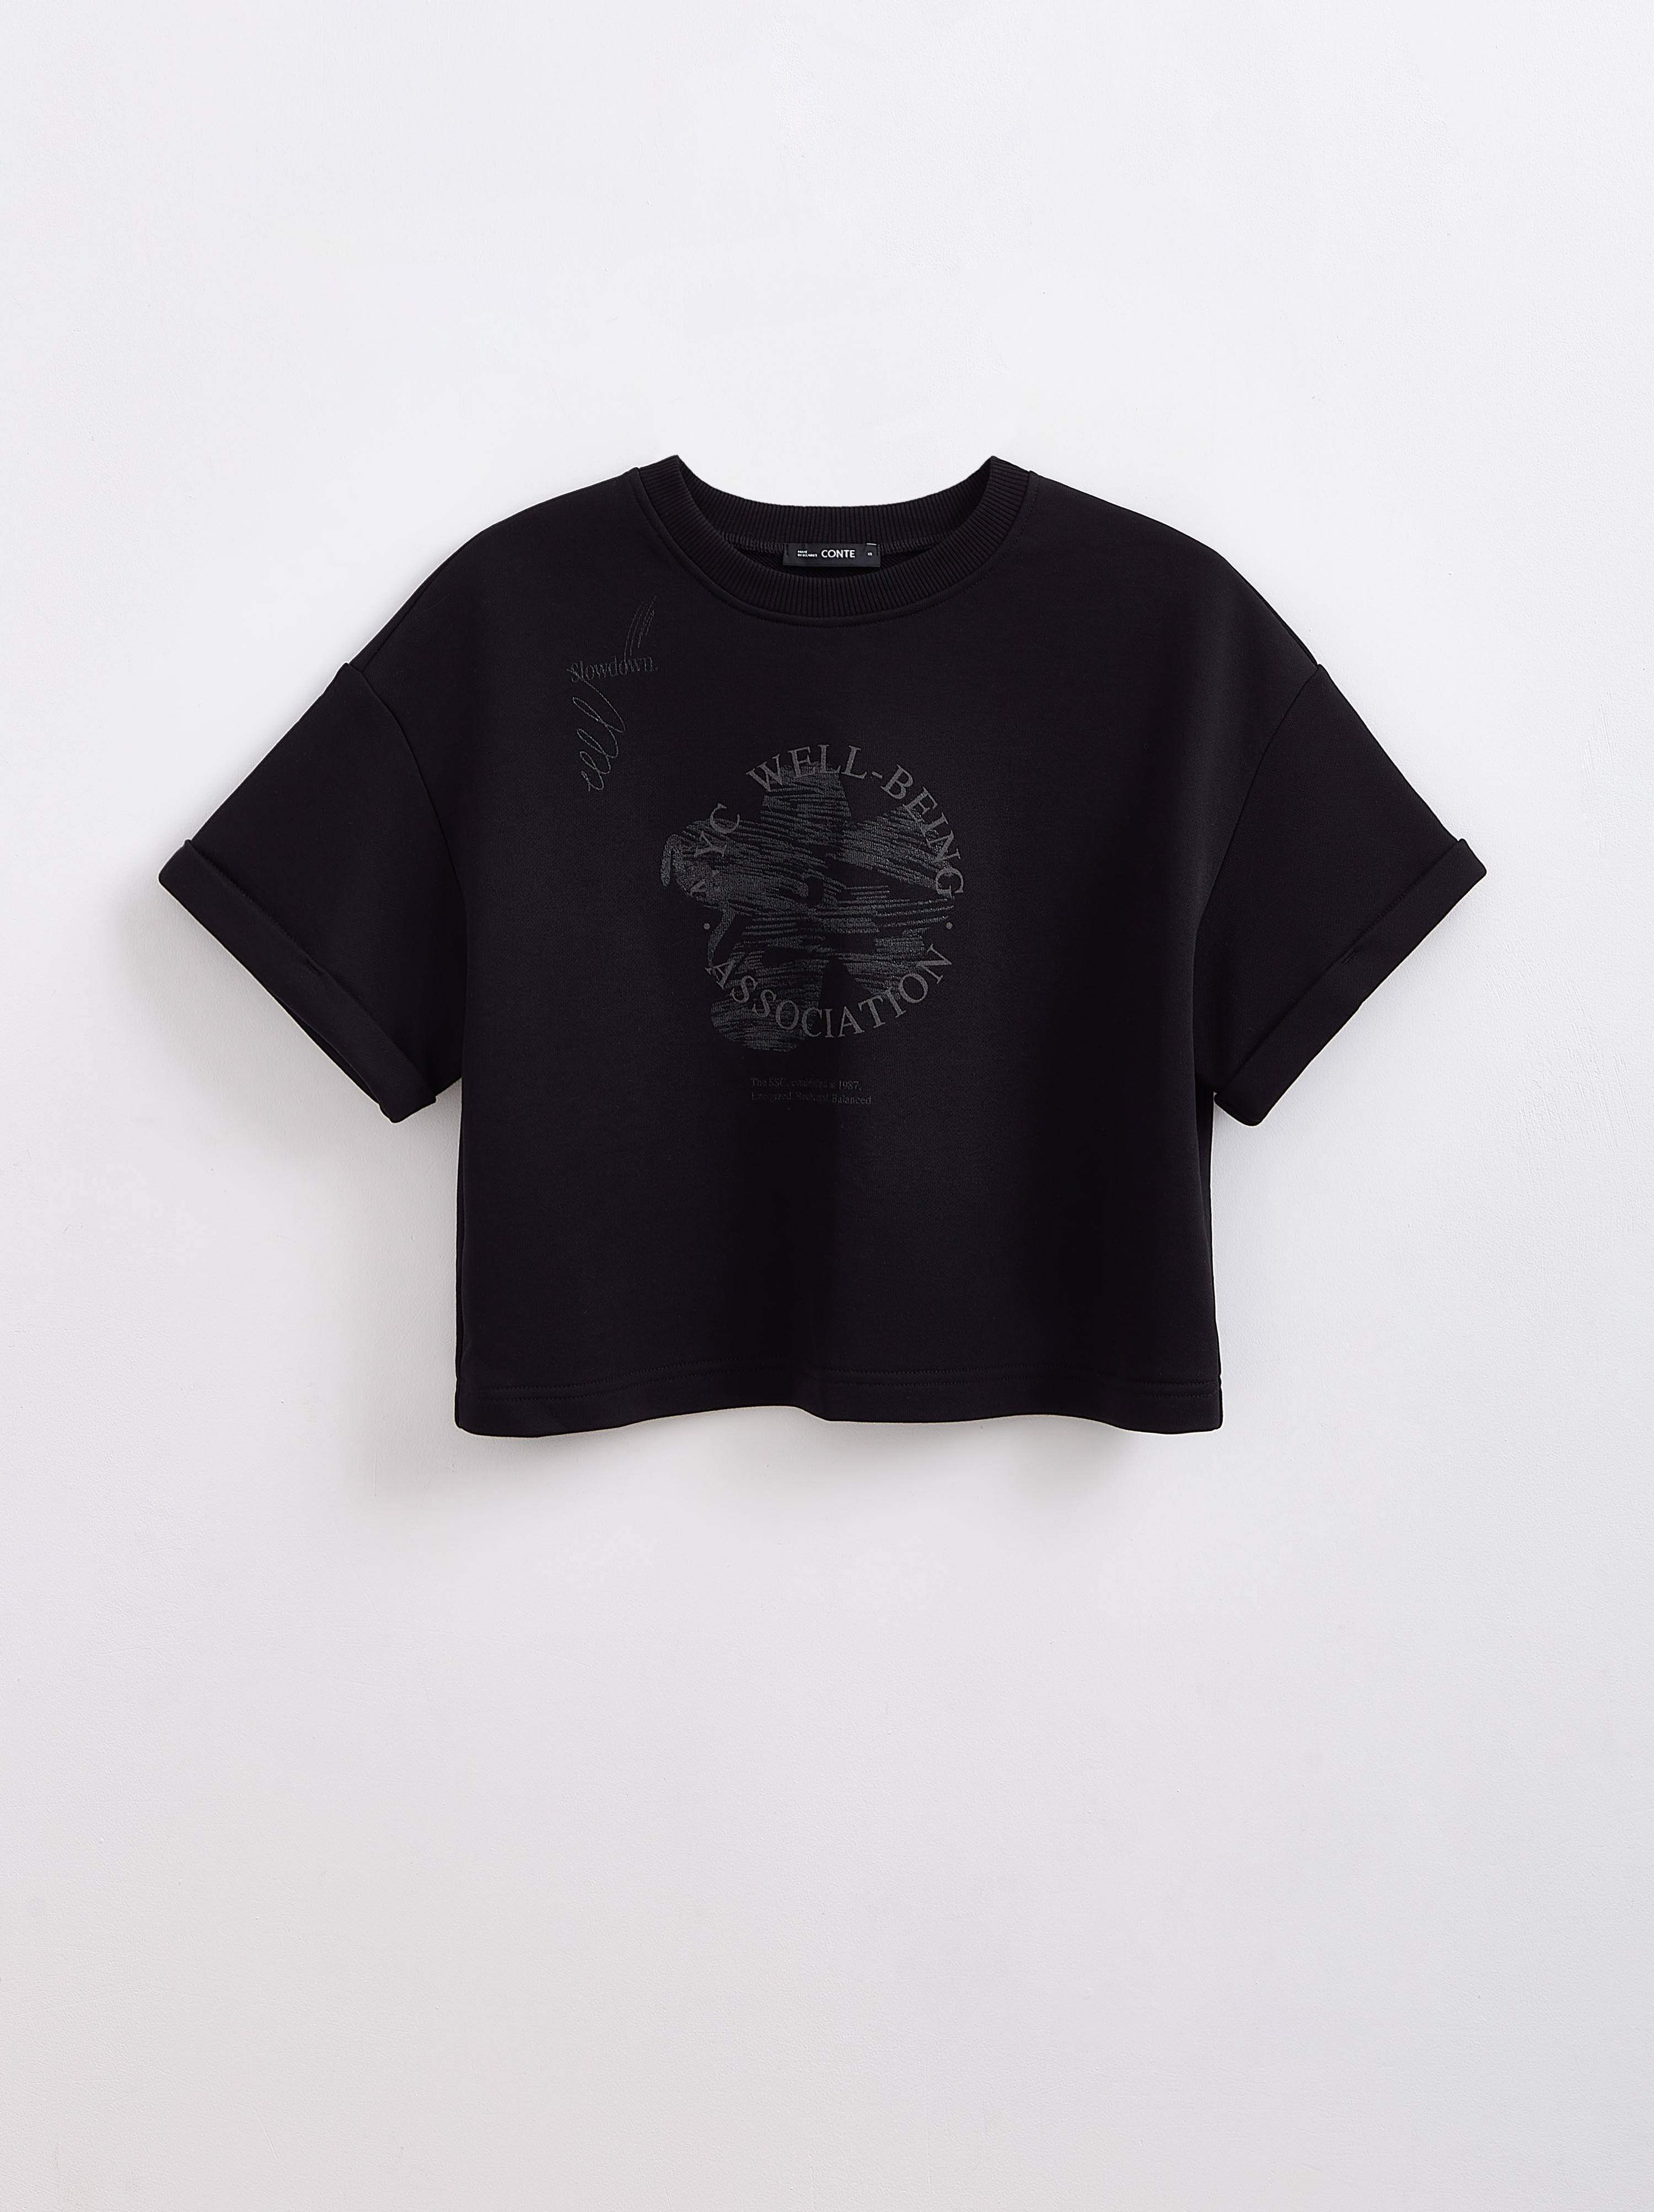 Укороченная футболка из футера с рисунком «Association» LD 2286 Conte ⭐️, цвет black, размер 170-84/xs - фото 1